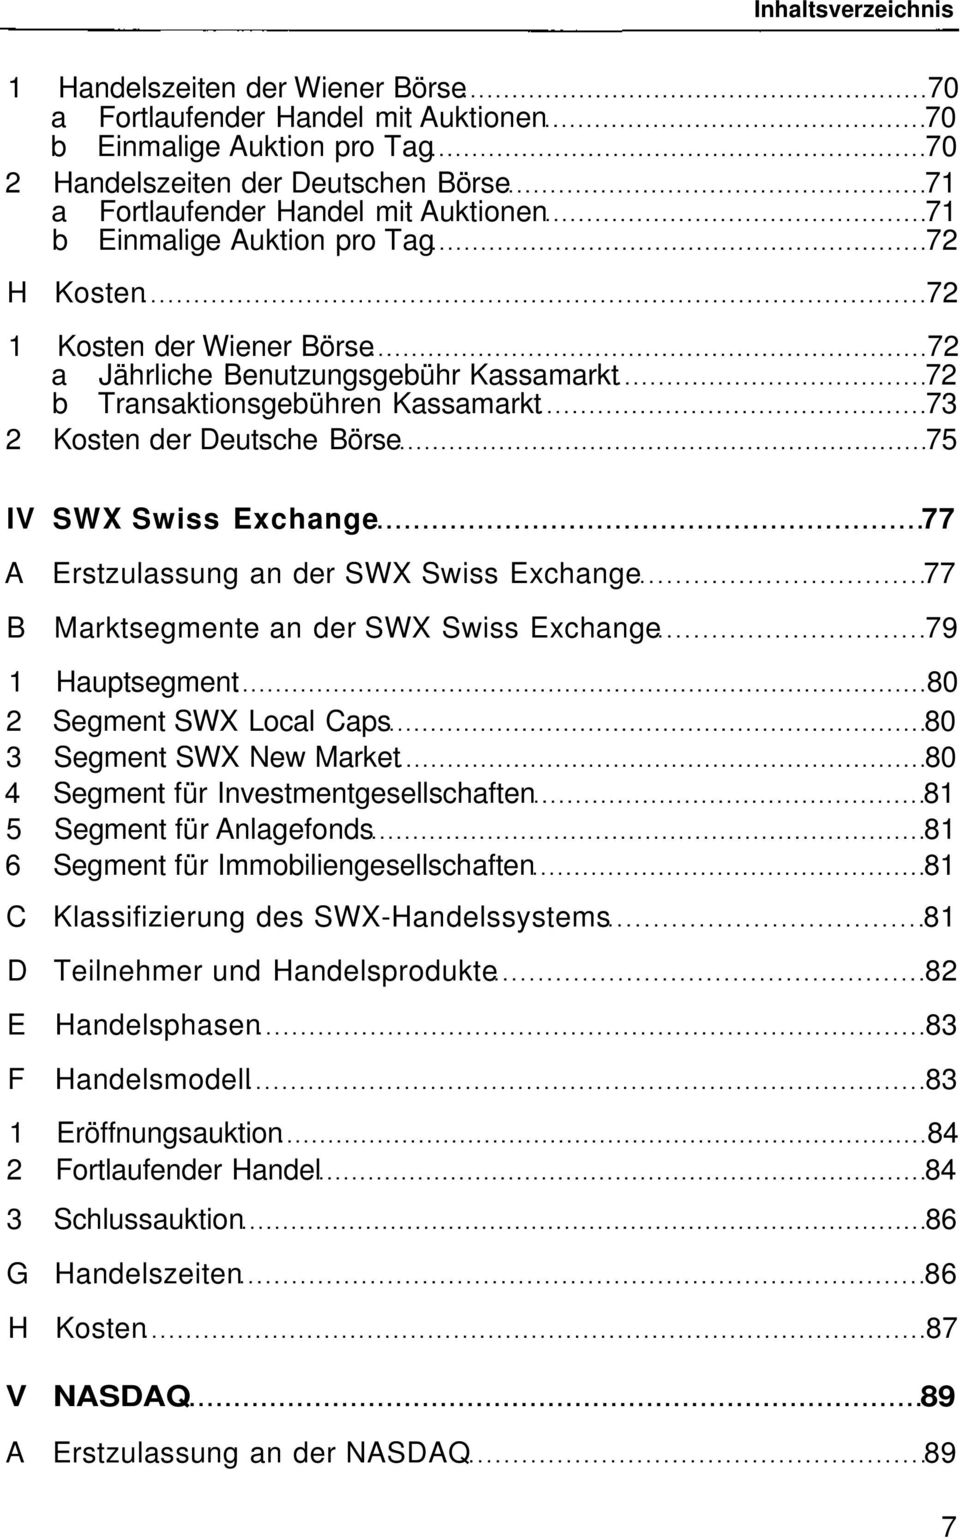 Erstzulassung an der SWX Swiss Exchange 77 B Marktsegmente an der SWX Swiss Exchange 79 1 Hauptsegment 80 2 Segment SWX Local Caps 80 3 Segment SWX New Market 80 4 Segment für